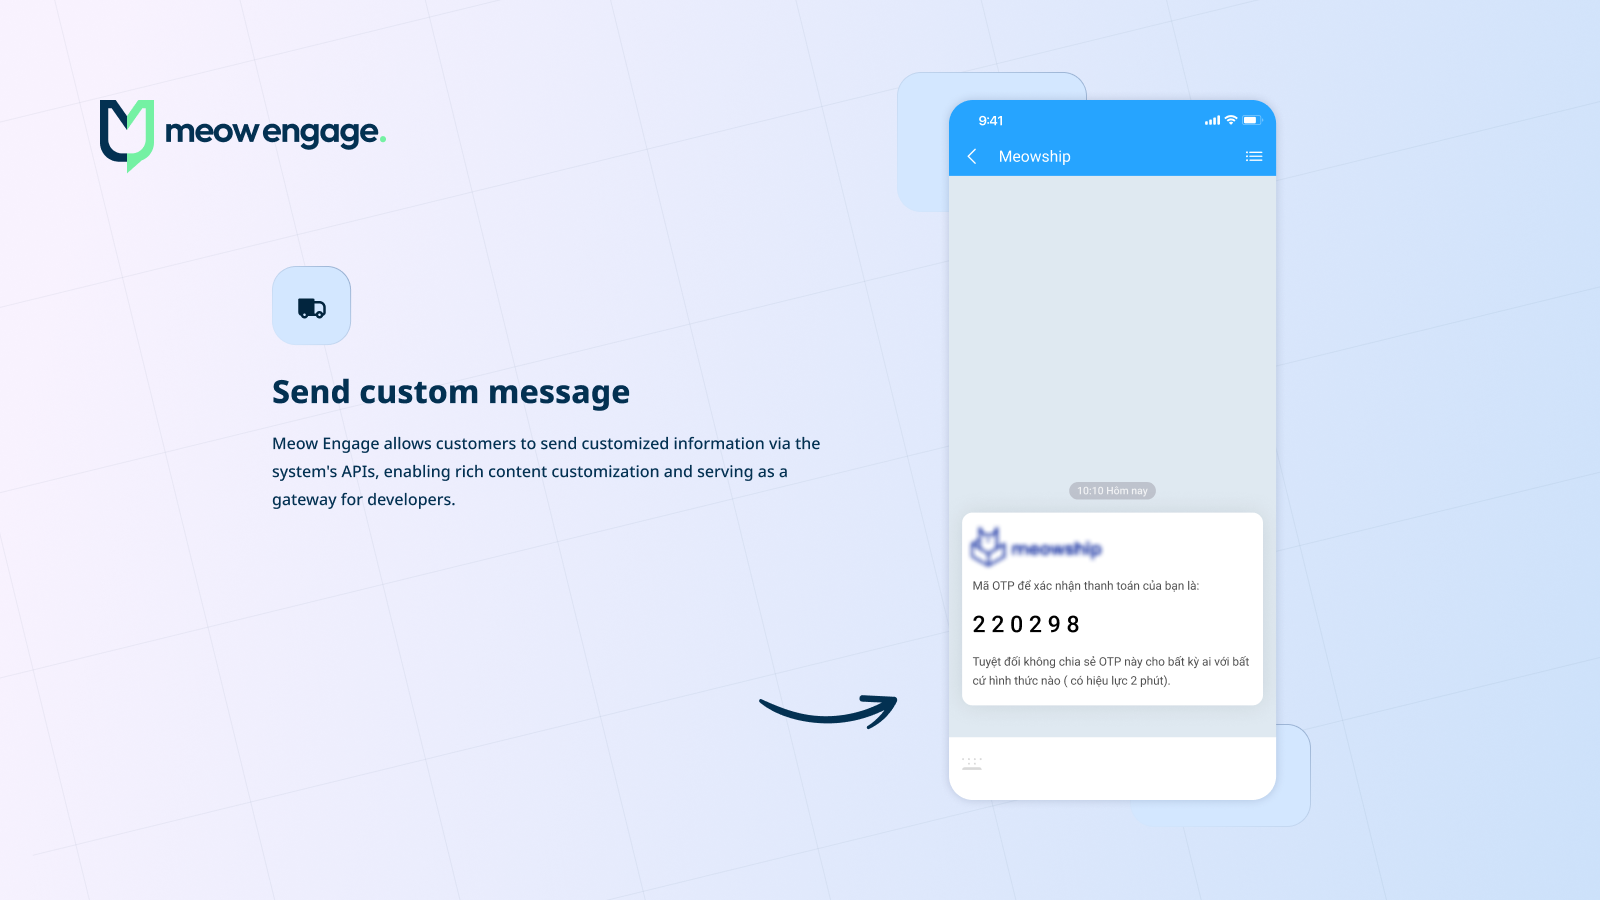 Send custom message via API